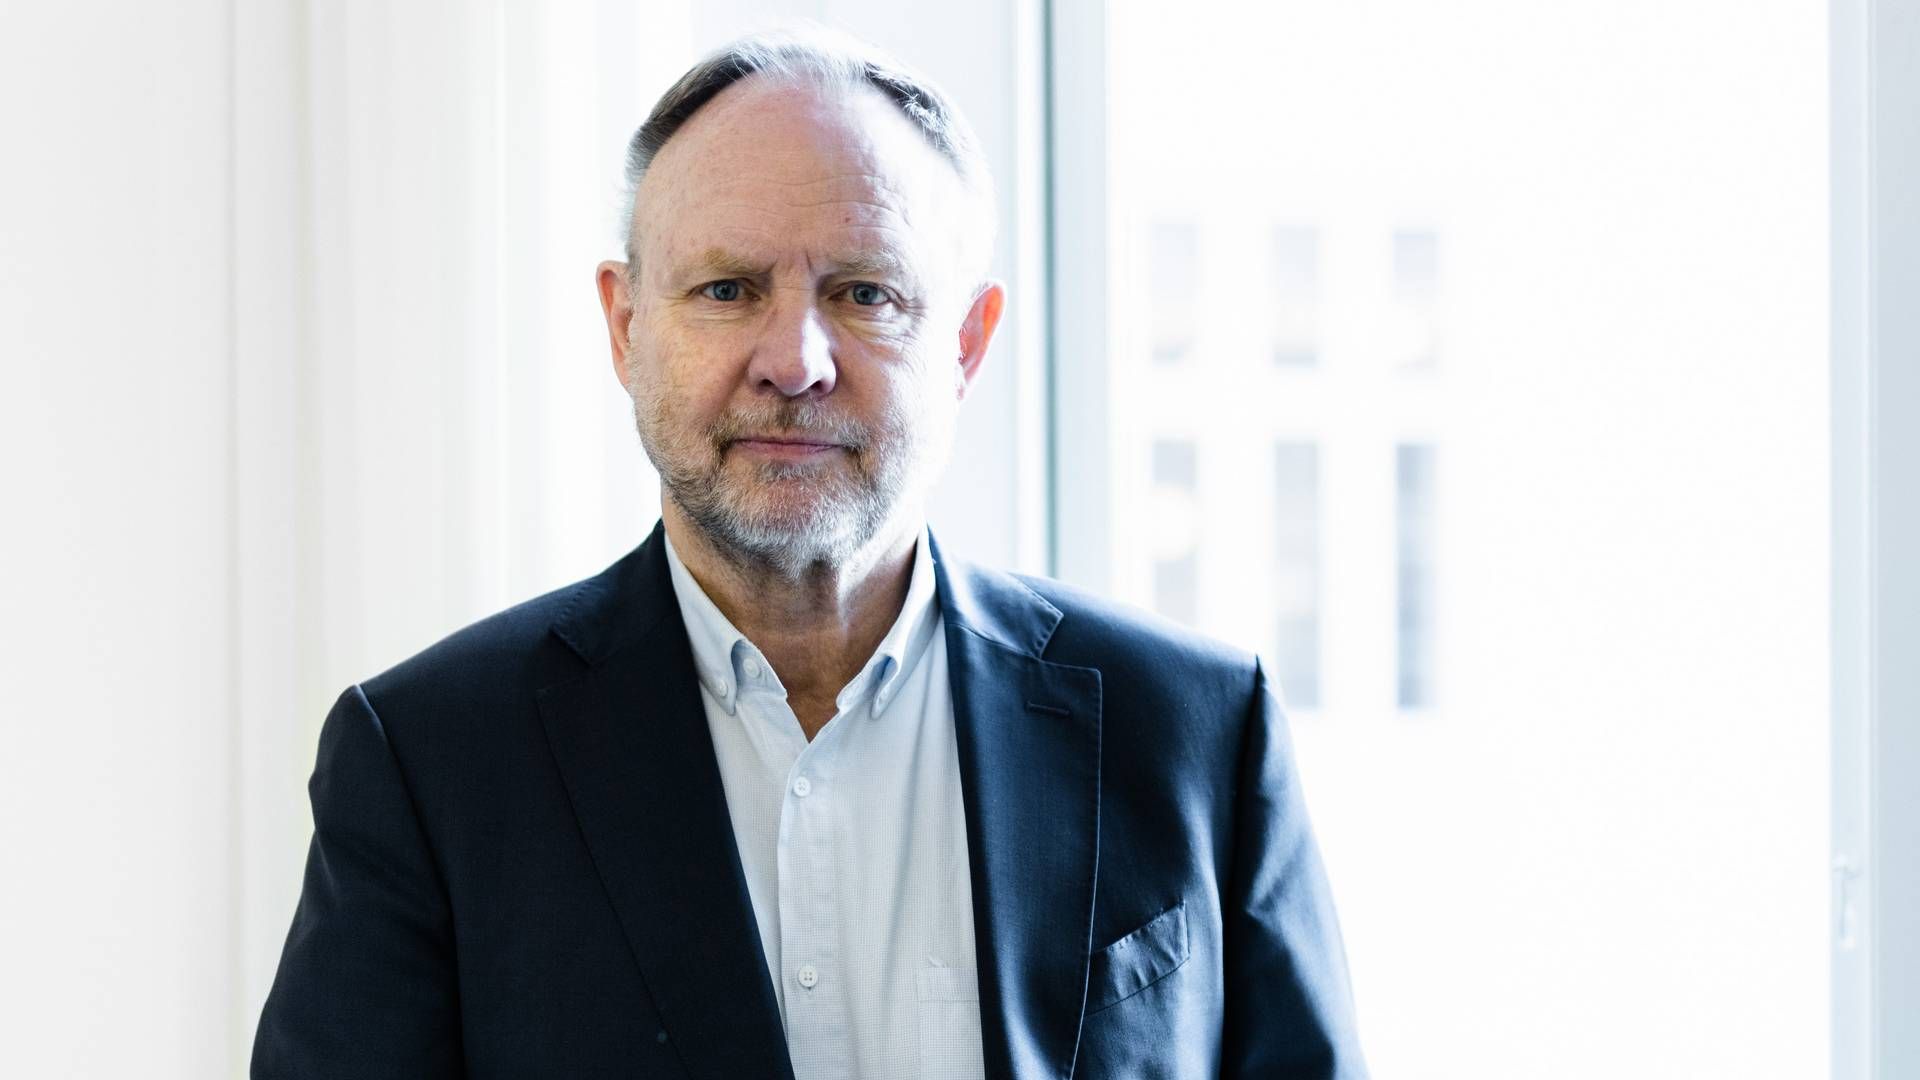 Tidligere indehaver af konsulenthuset Kirstein, Jesper Kirstein, er nyt bestyrelsesmedlem i pensionsplatformen pensions.dk. | Foto: Pr/kirstein A/s